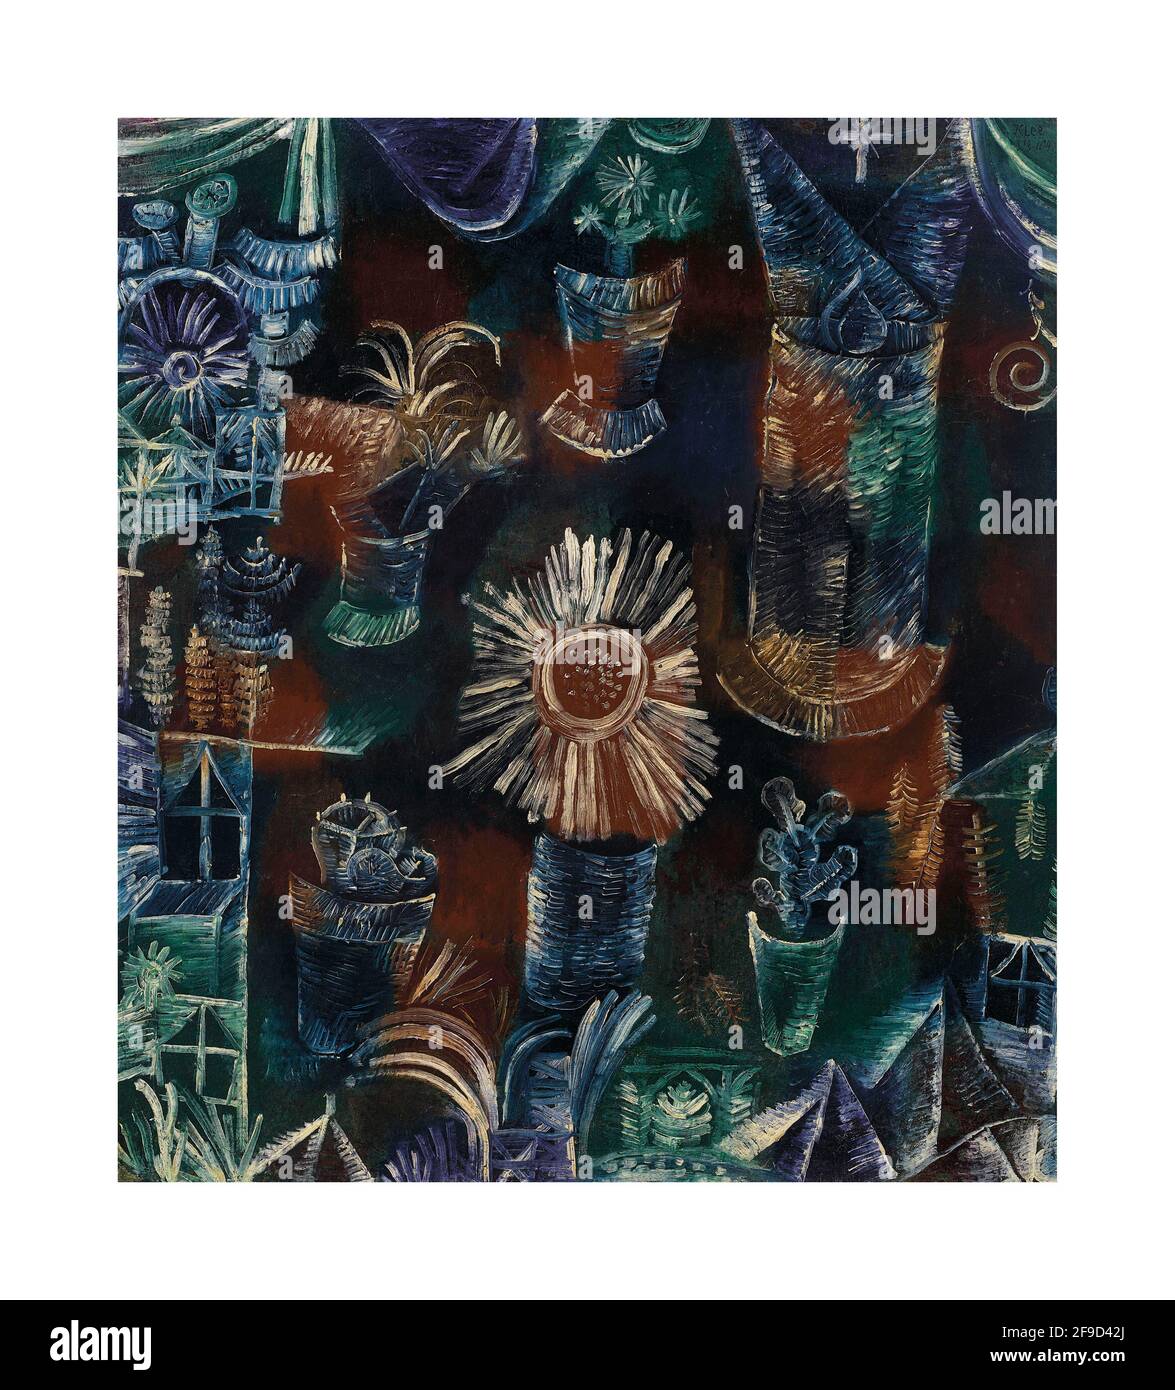 Stilleben mit der Distelblüte – Art by Paul Klee (18 December 1879 - 29 June 1940) Stock Photo